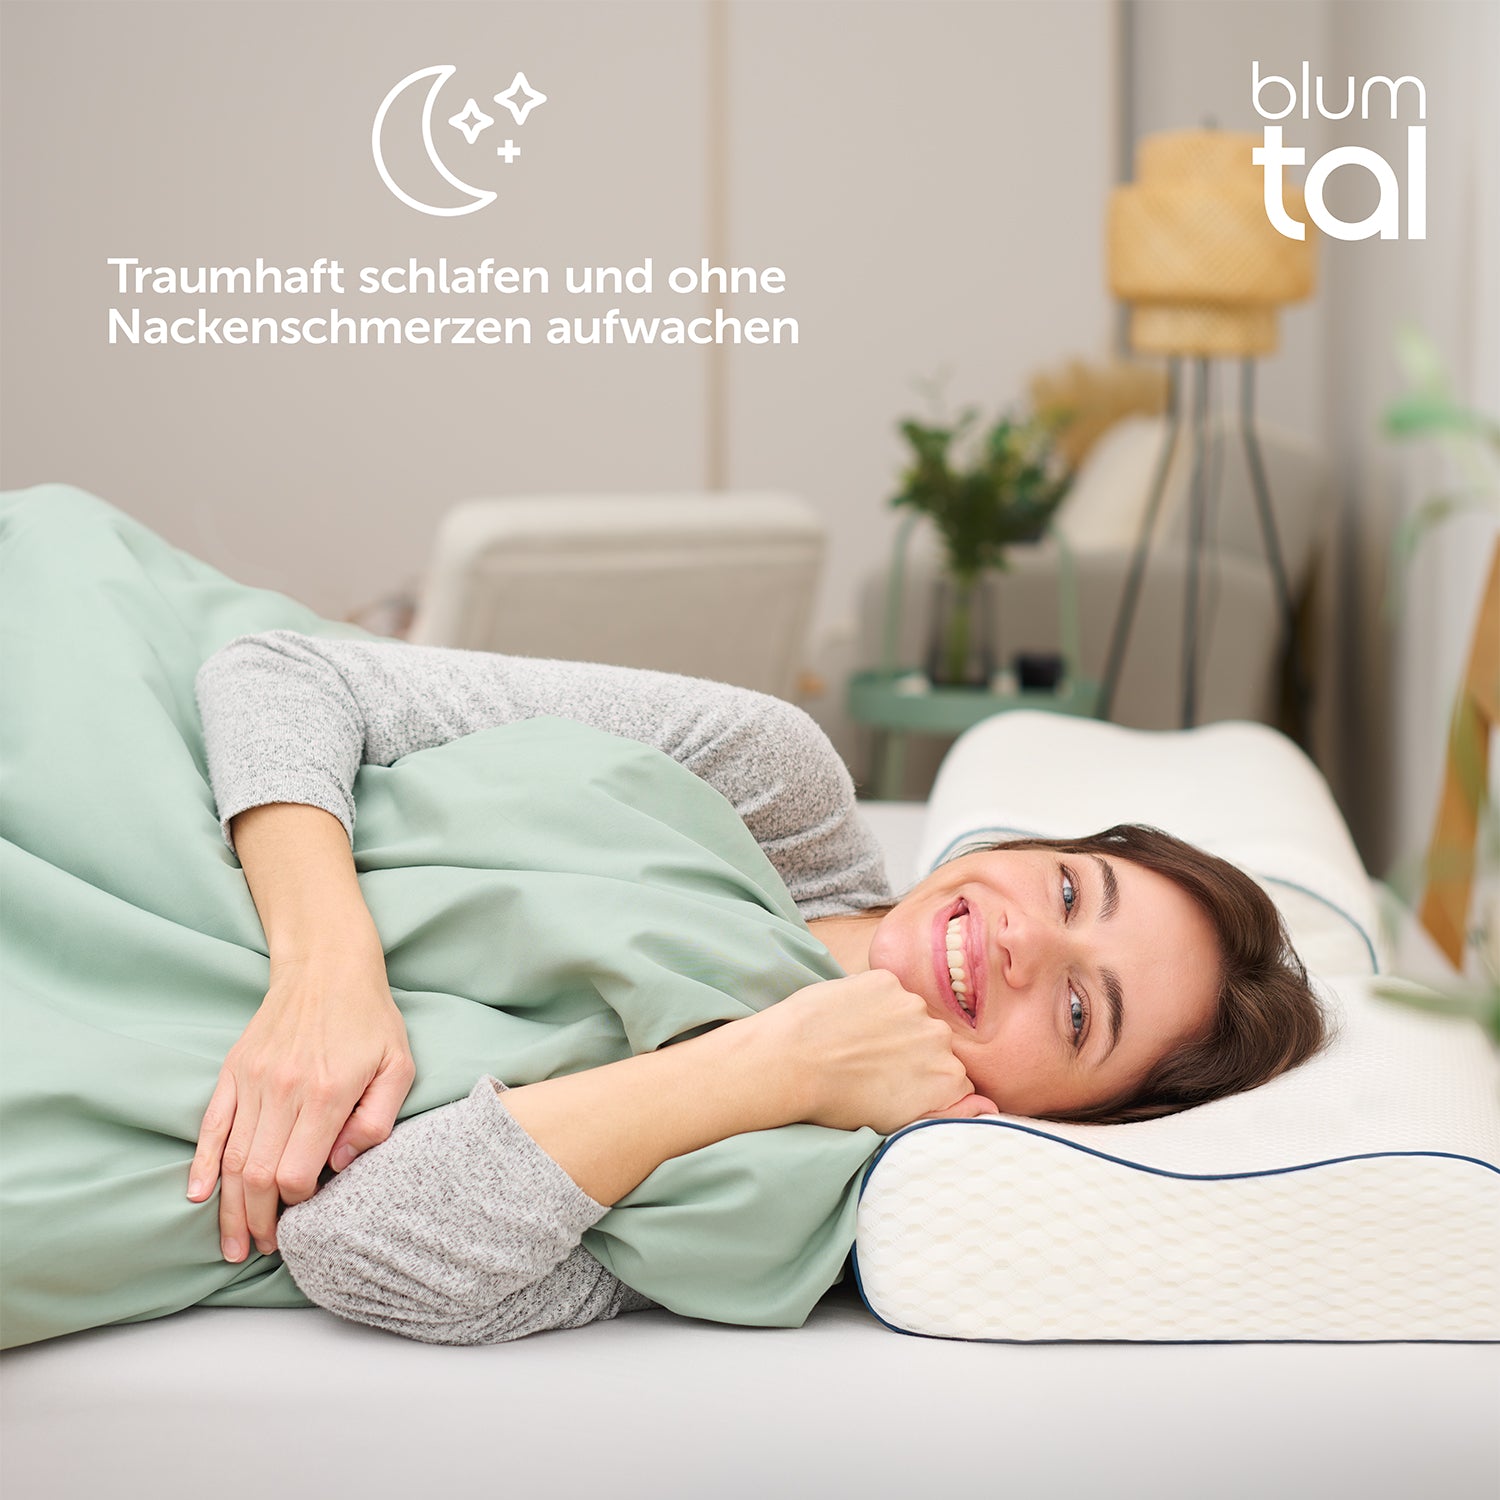 Frau liegt lächelnd auf dem Rücken im Bett und ruht ihren Kopf auf einem Blumtal Nackenstützkissen verspricht traumhaften Schlaf ohne Nackenschmerzen.